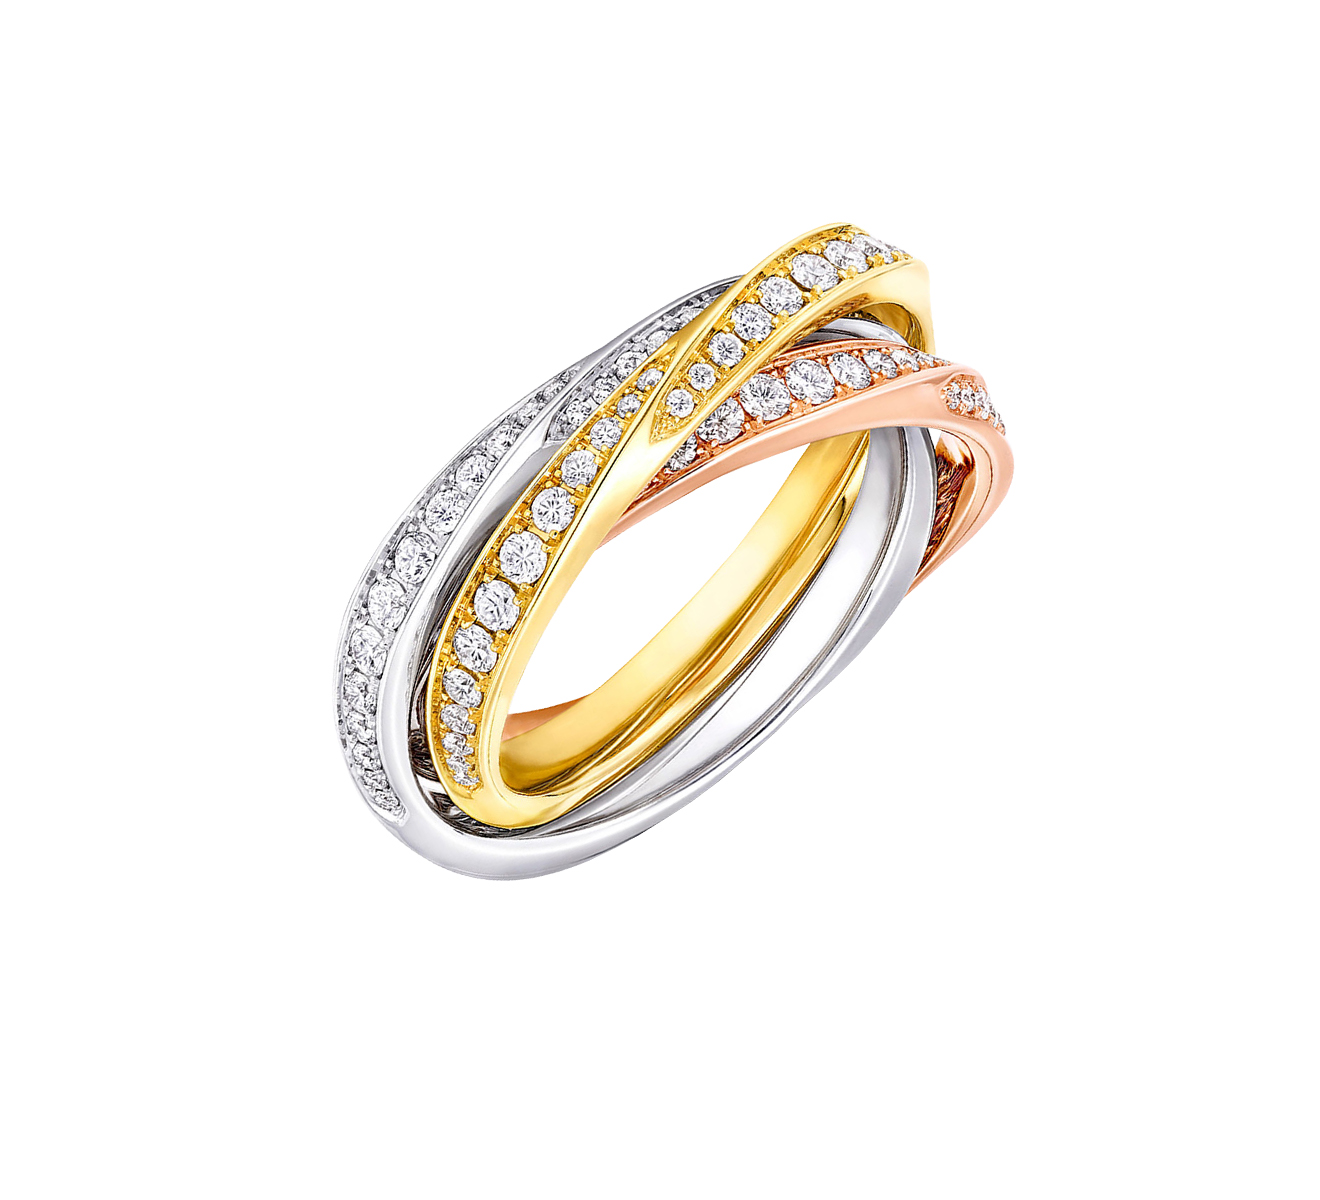 Кольцо GRAFF Spiral RGR 810, белое, жёлтое и розовое золото, бриллианты